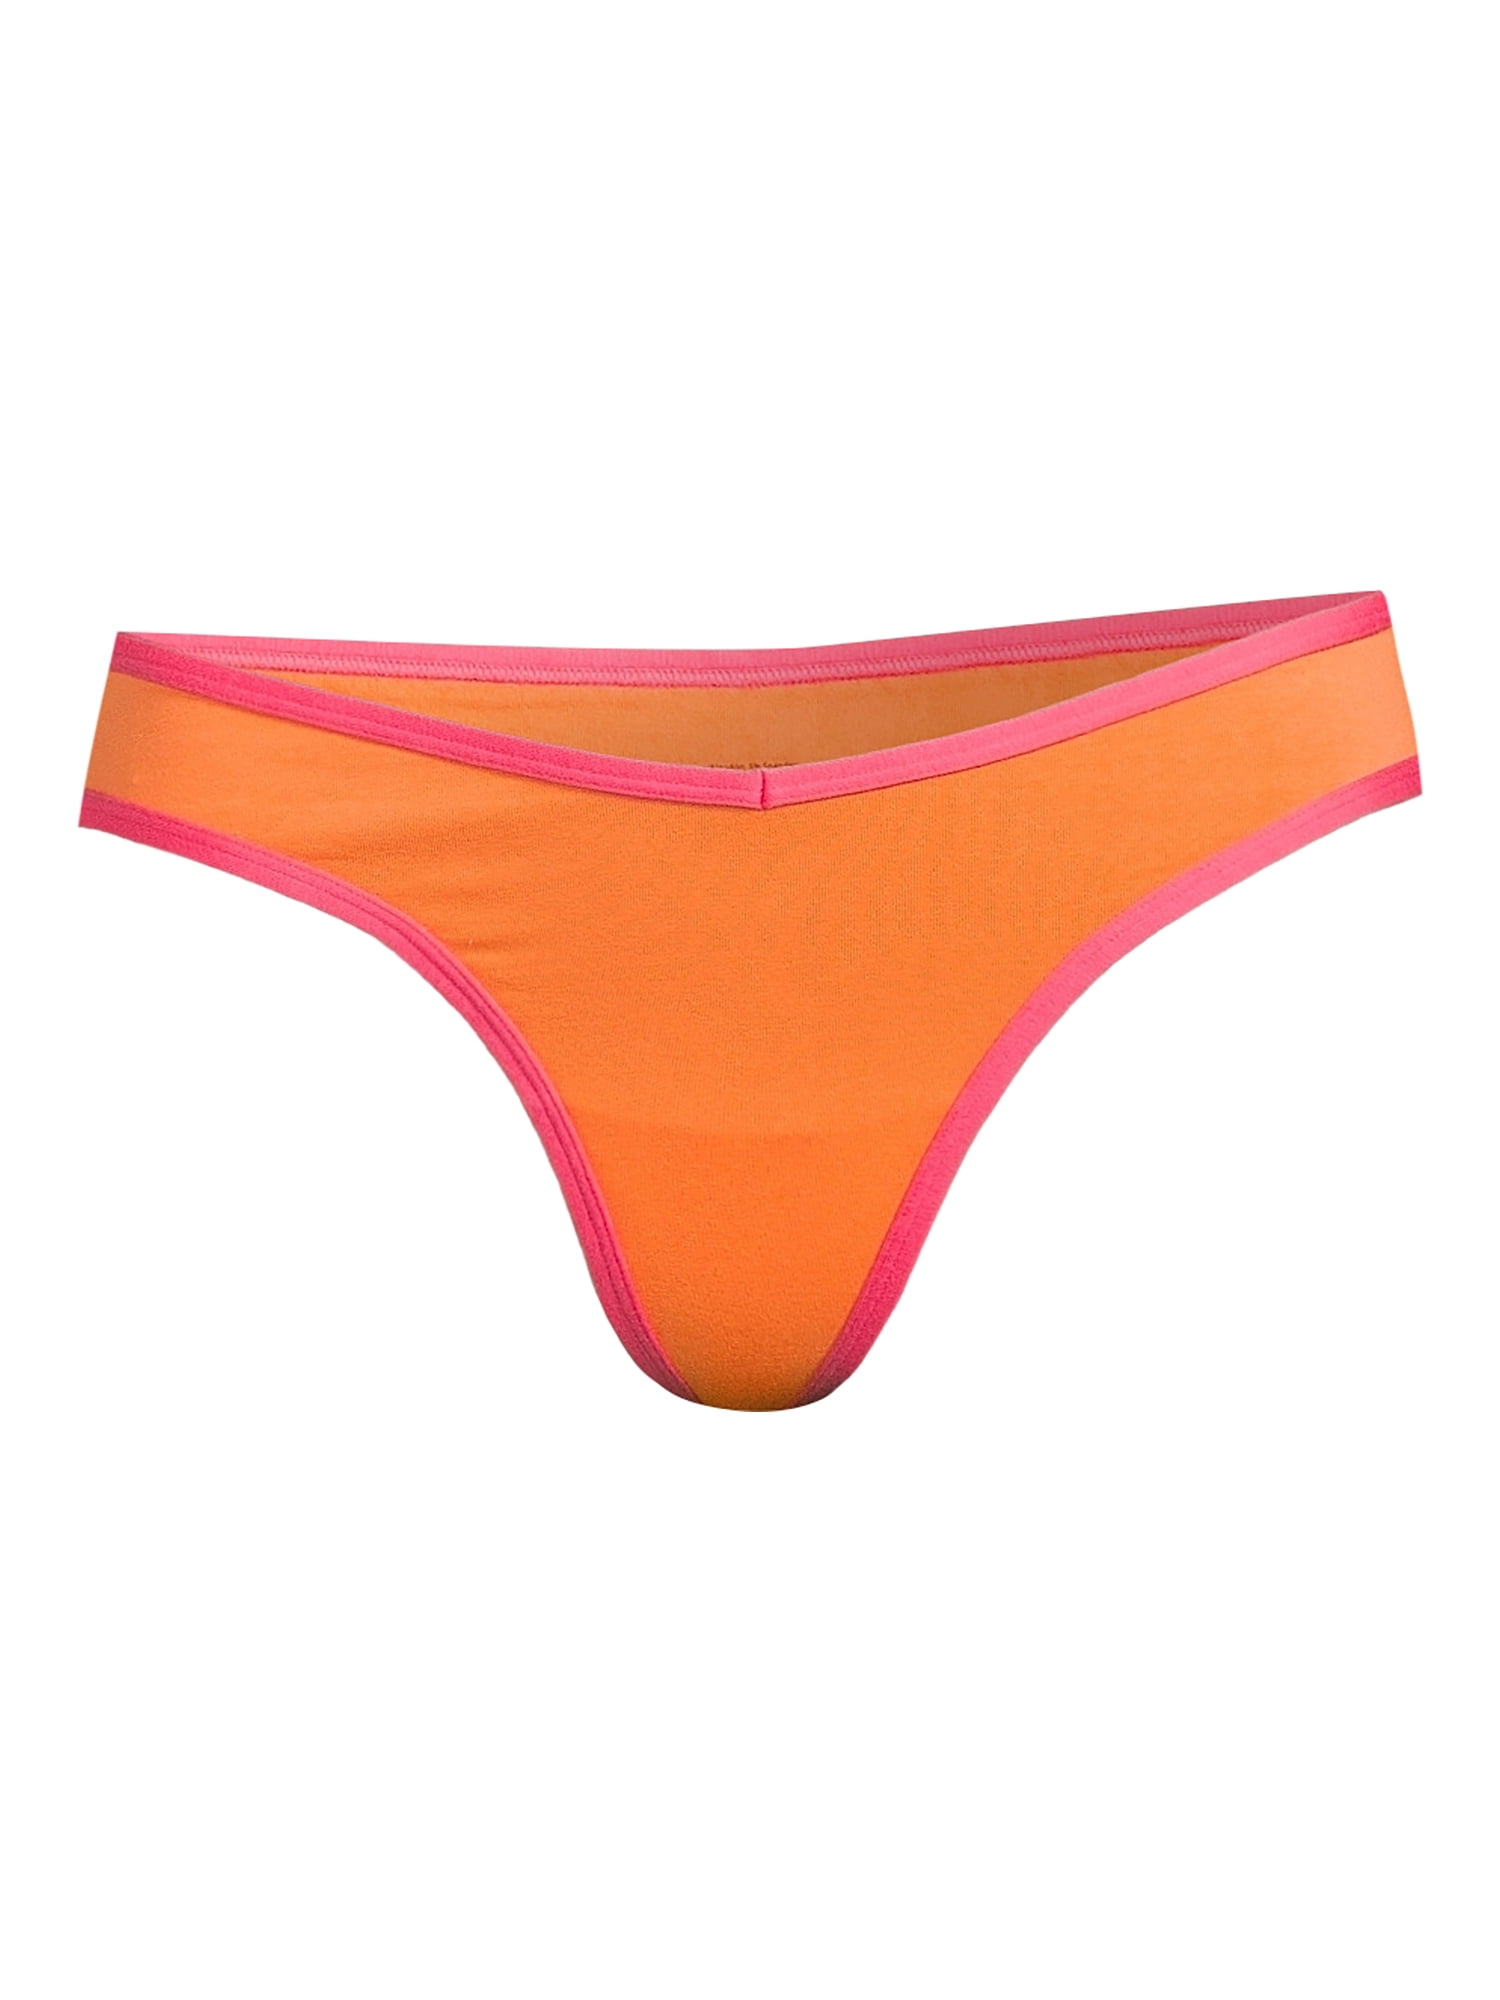 NWT NOBO No Boundaries Thong Panties Size XL (LOT OF 3 Thongs) (T9-5)